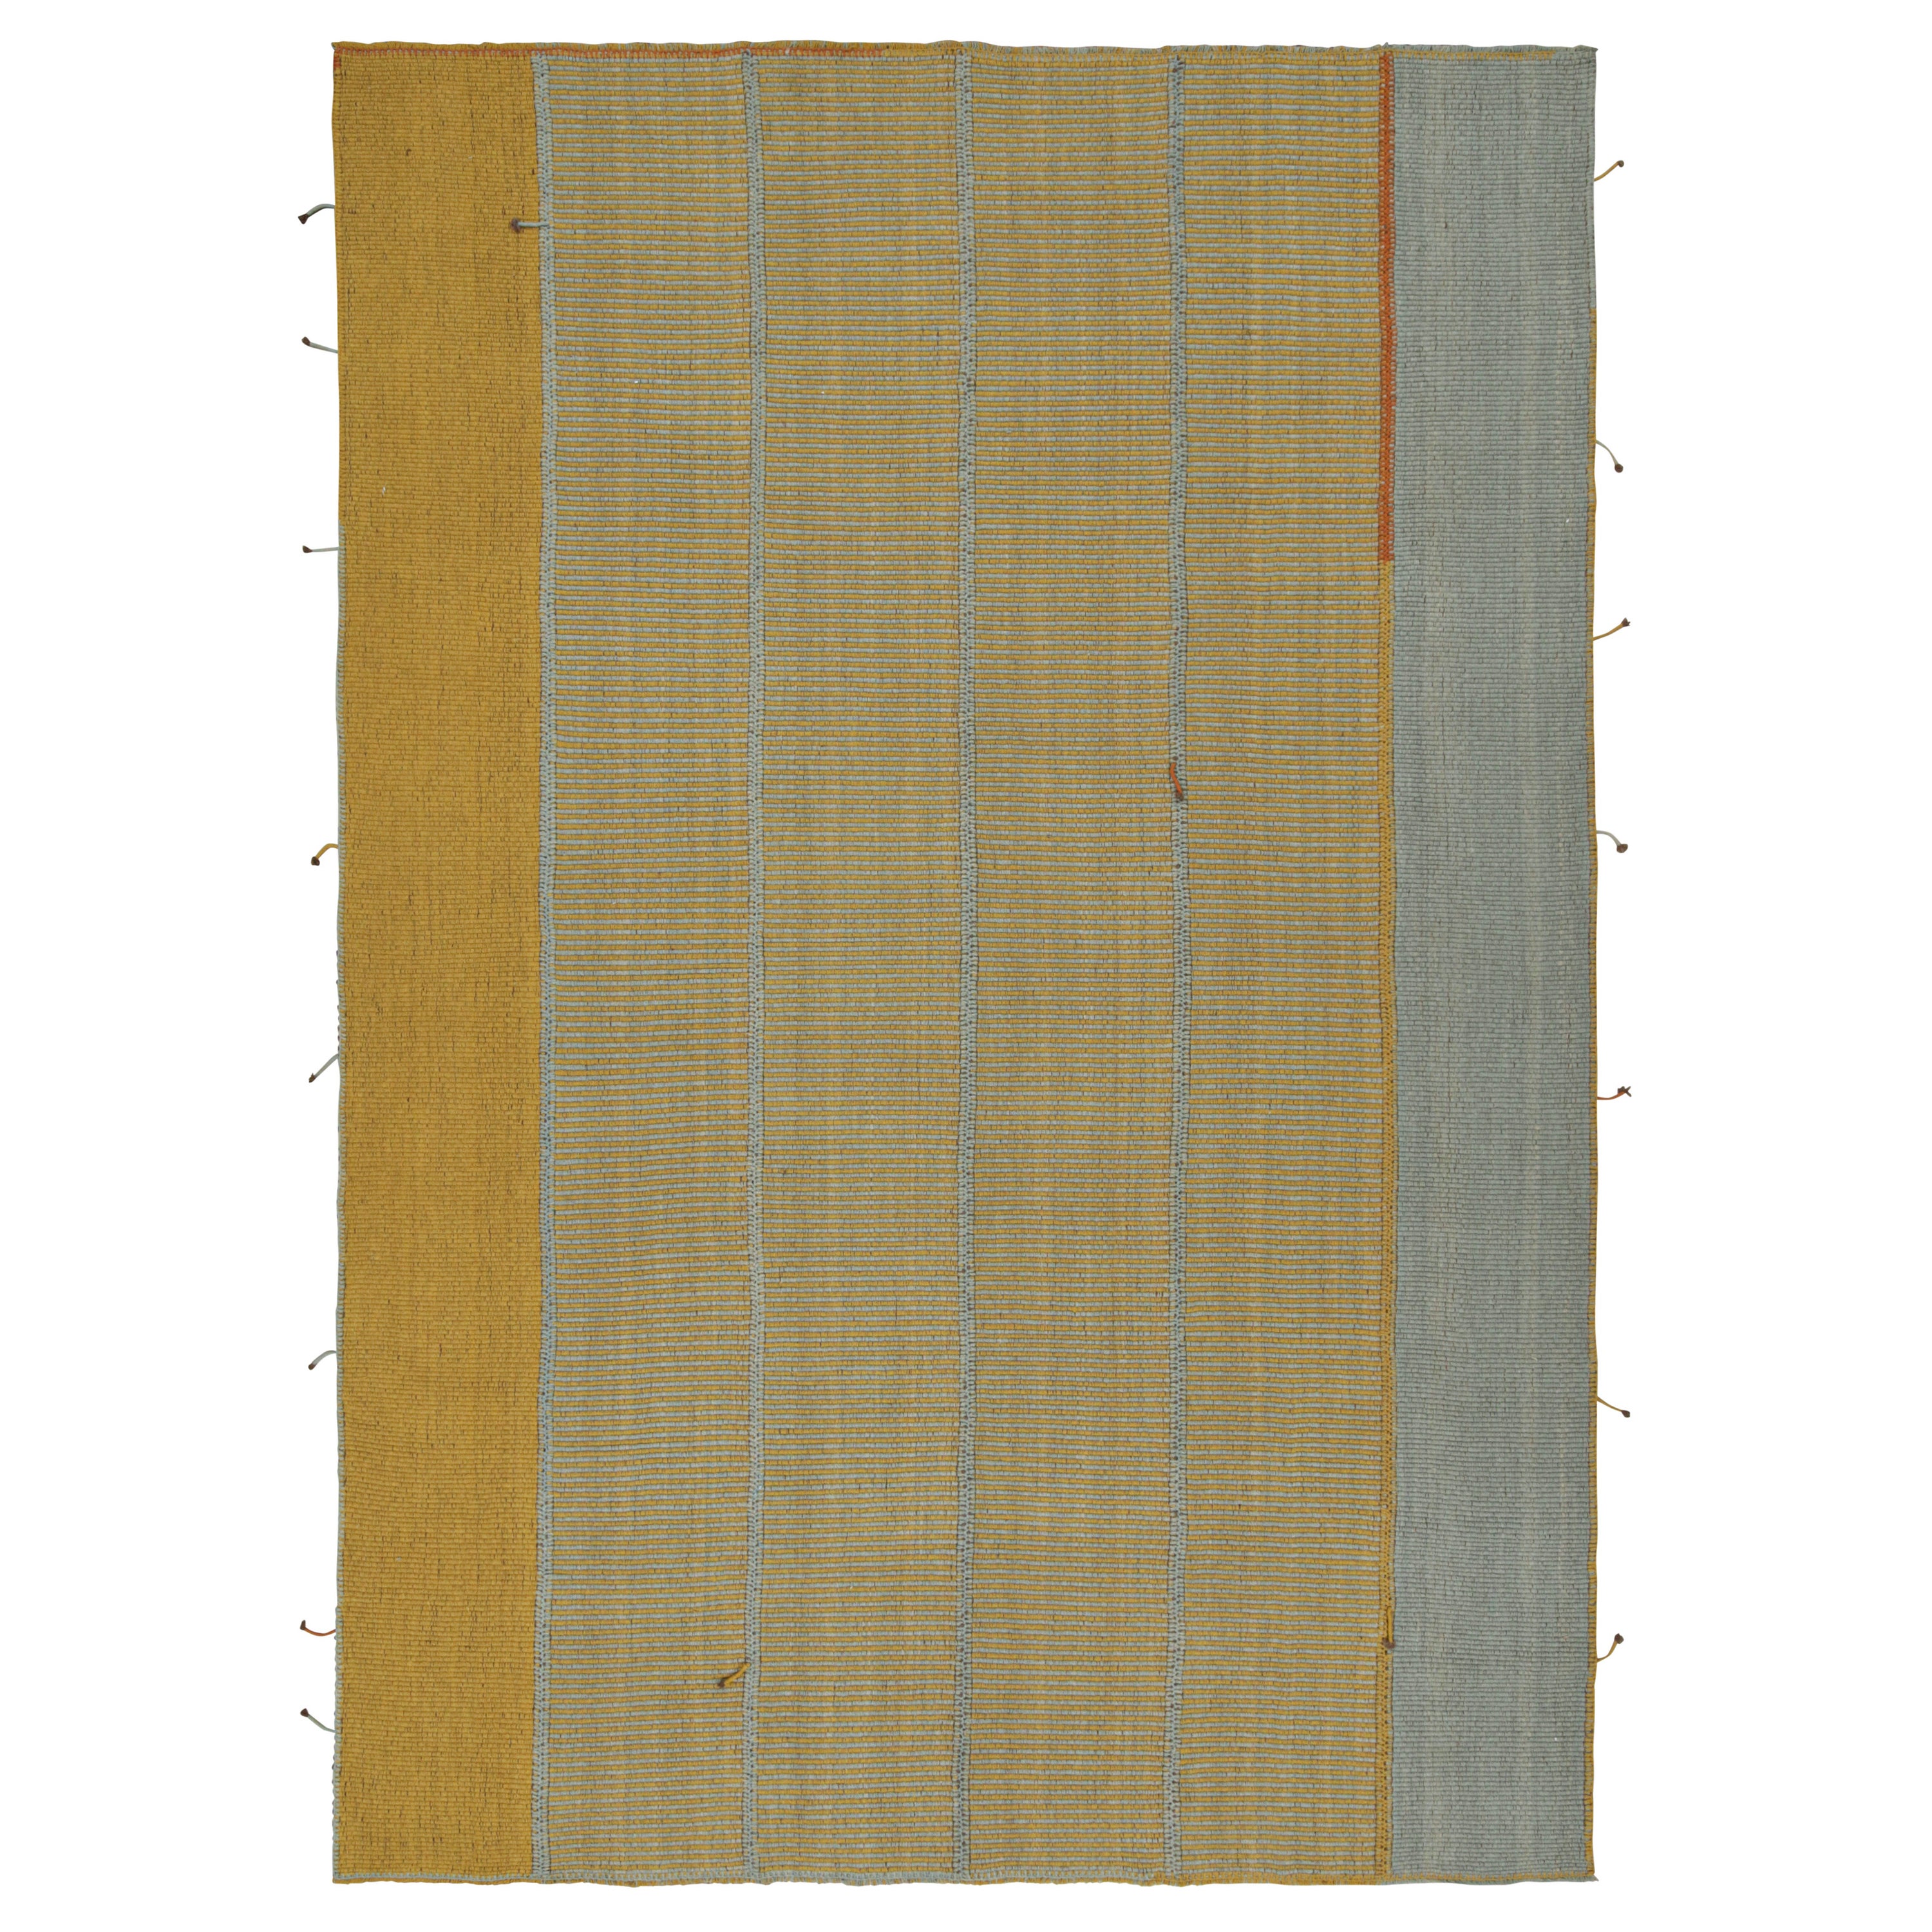 Rug & Kilim's Contemporary Custom Kilim Design in Gold and Blue Stripes (Motifs contemporains de tapis sur mesure à rayures bleues et dorées)